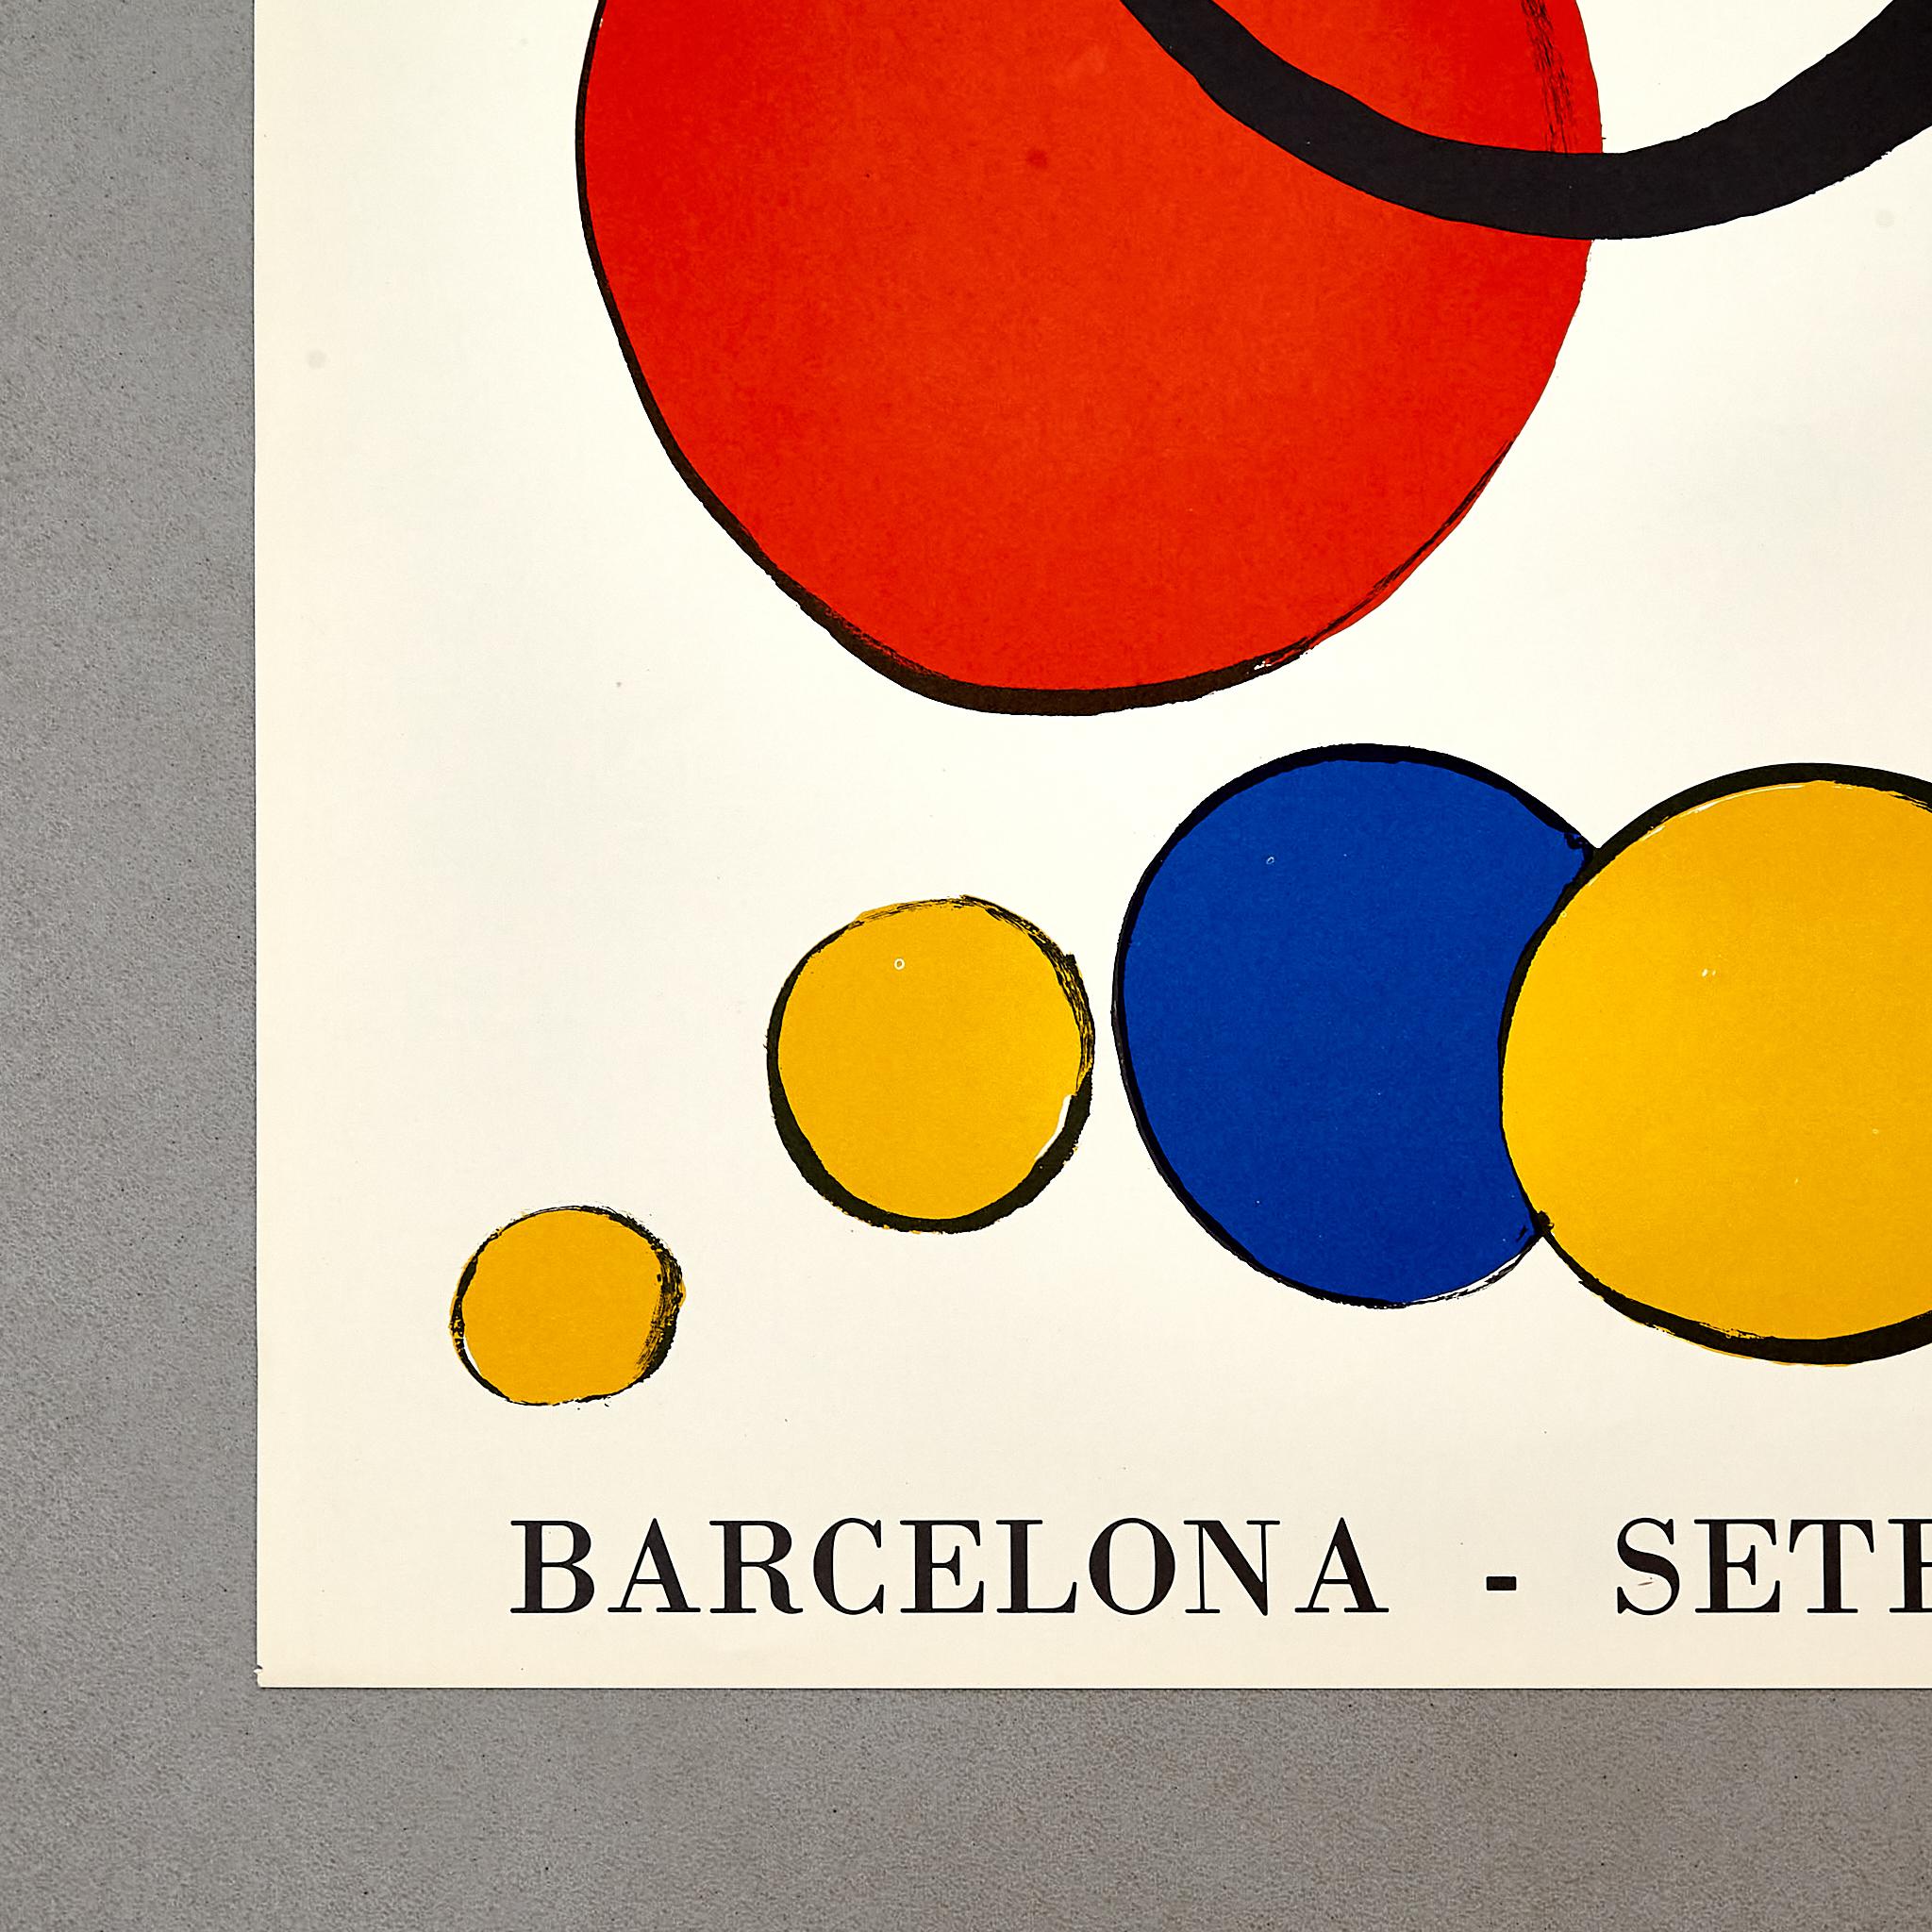 Spanish Captivating Calder Art: Original 1973 Sala Gaspar Exhibition Poster  For Sale